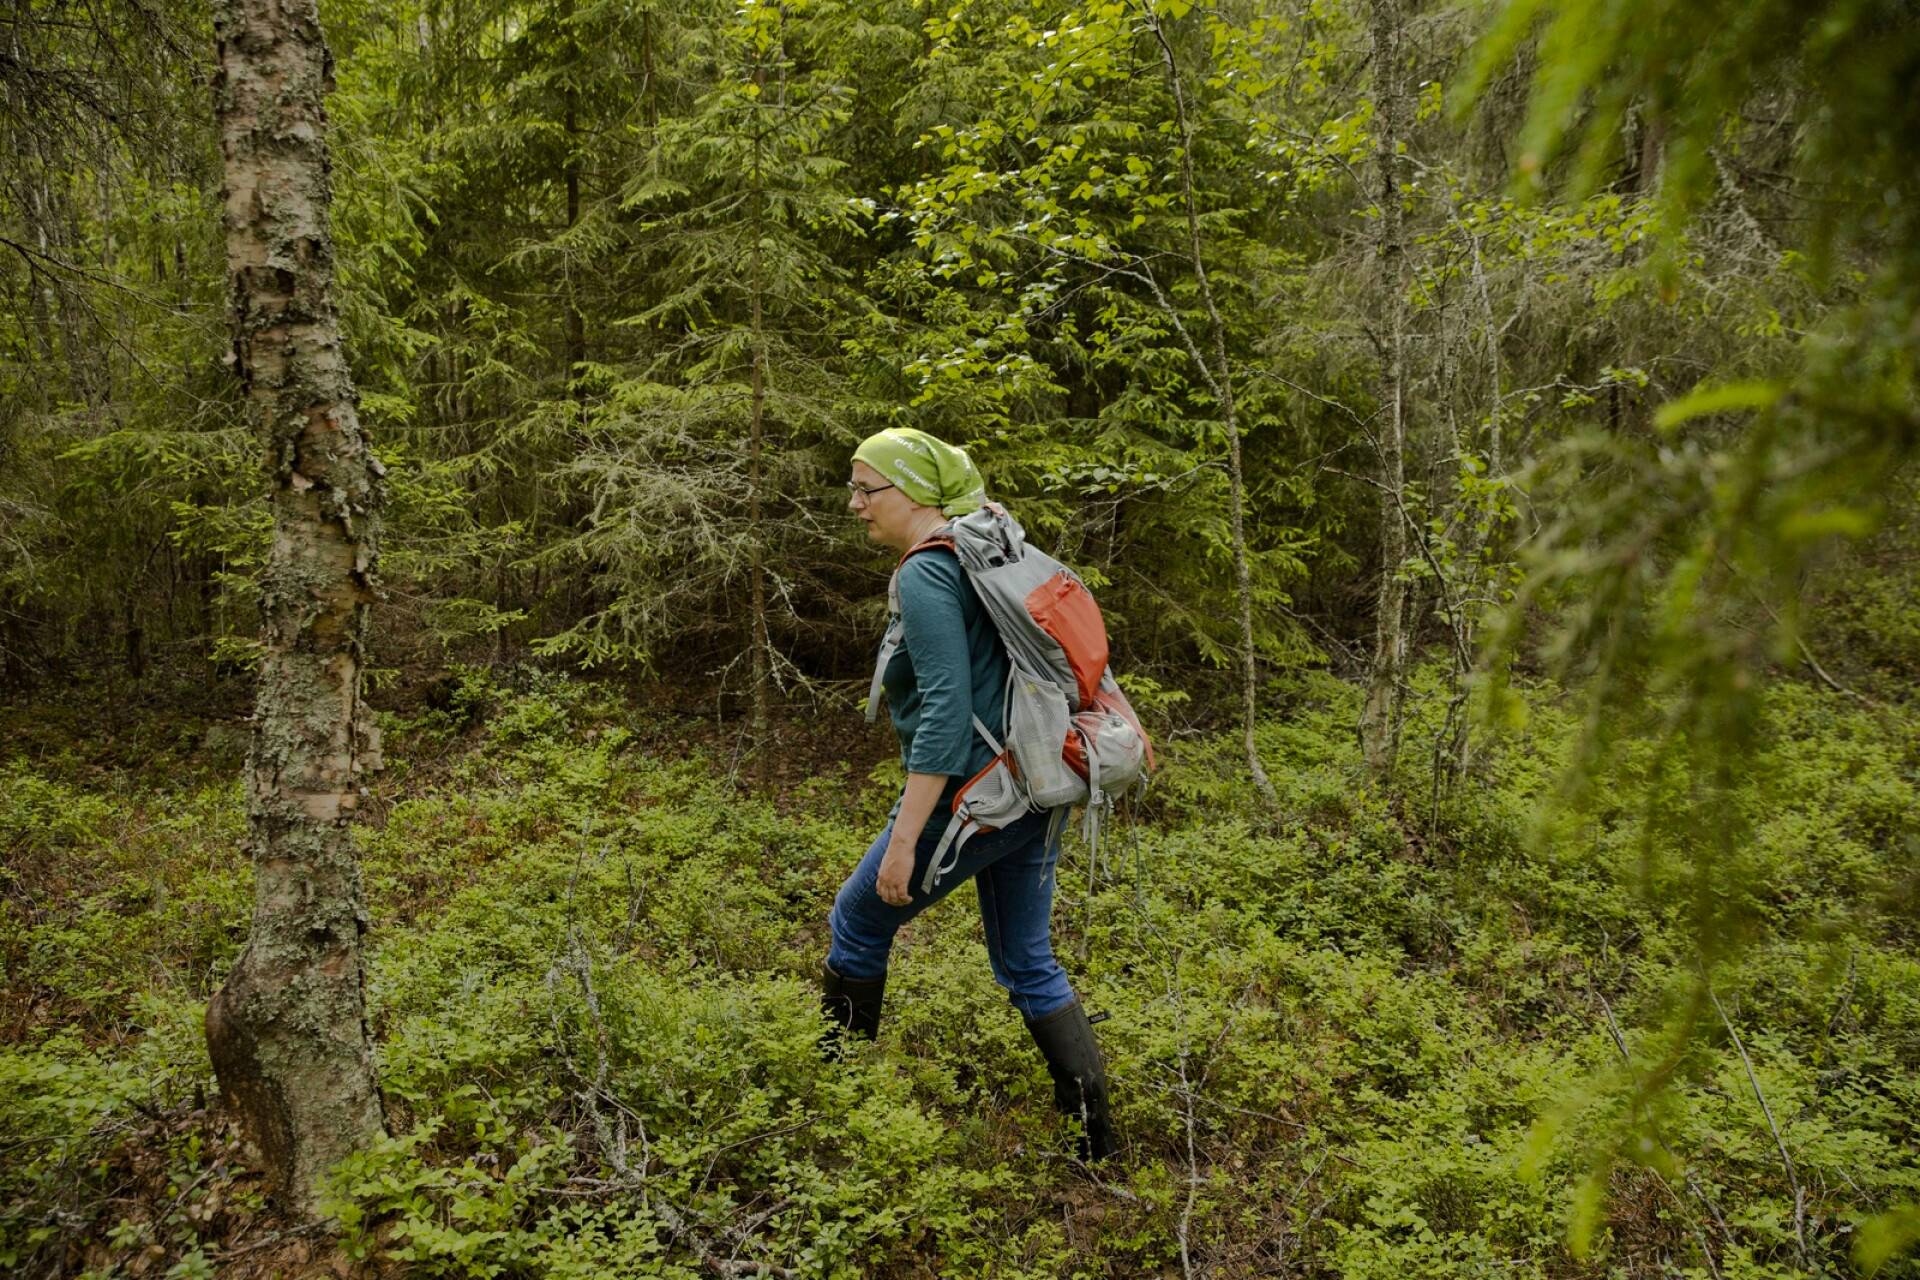 Luontoa ihmisen kulttuuriympäristönä tutkiva Ilona Hankonen on tottunut metsässä liikkuja. Paitsi tutkija hän on myös luonnonsuojelija.